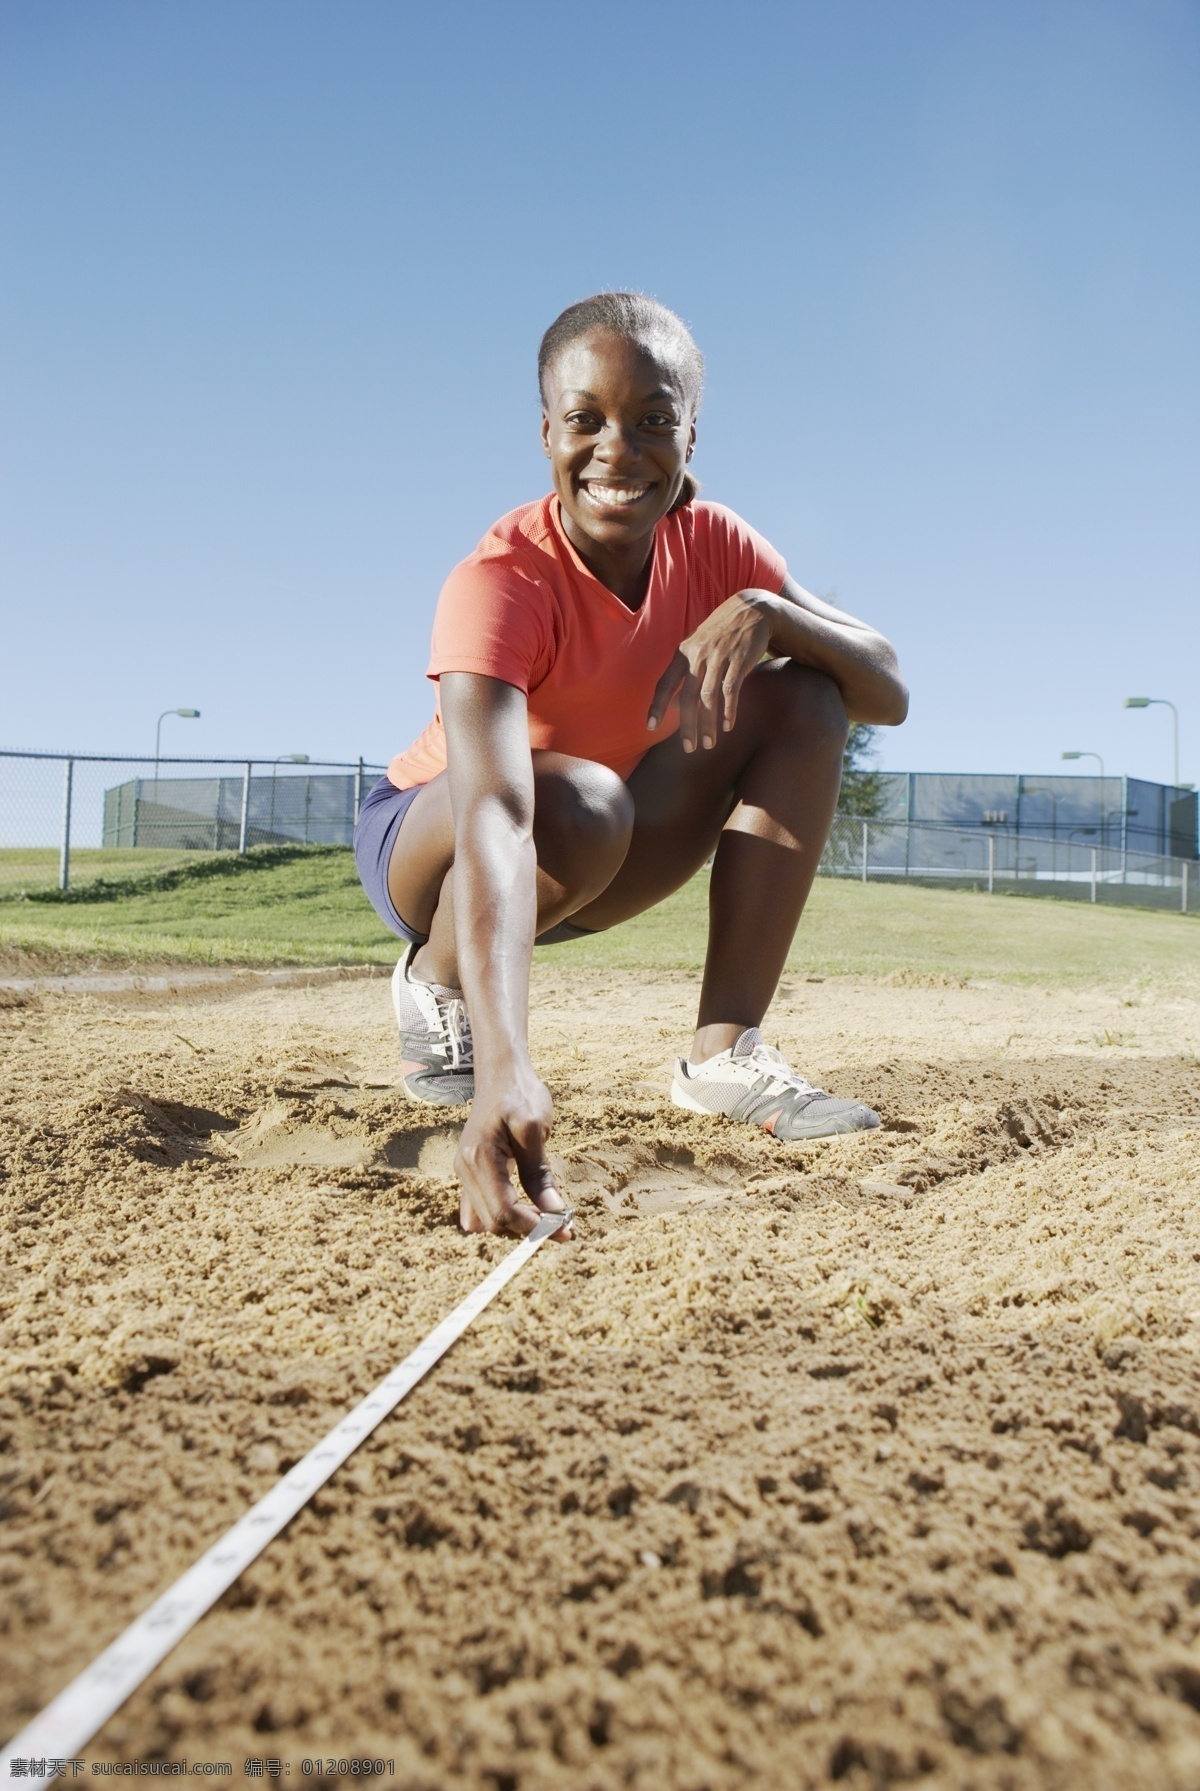 测量 沙坑 女性 运动员 高清 体育运动 体育项目 体育比赛 外国人 黑人 软尺 跳远 摄影图 高清图片 生活百科 白色